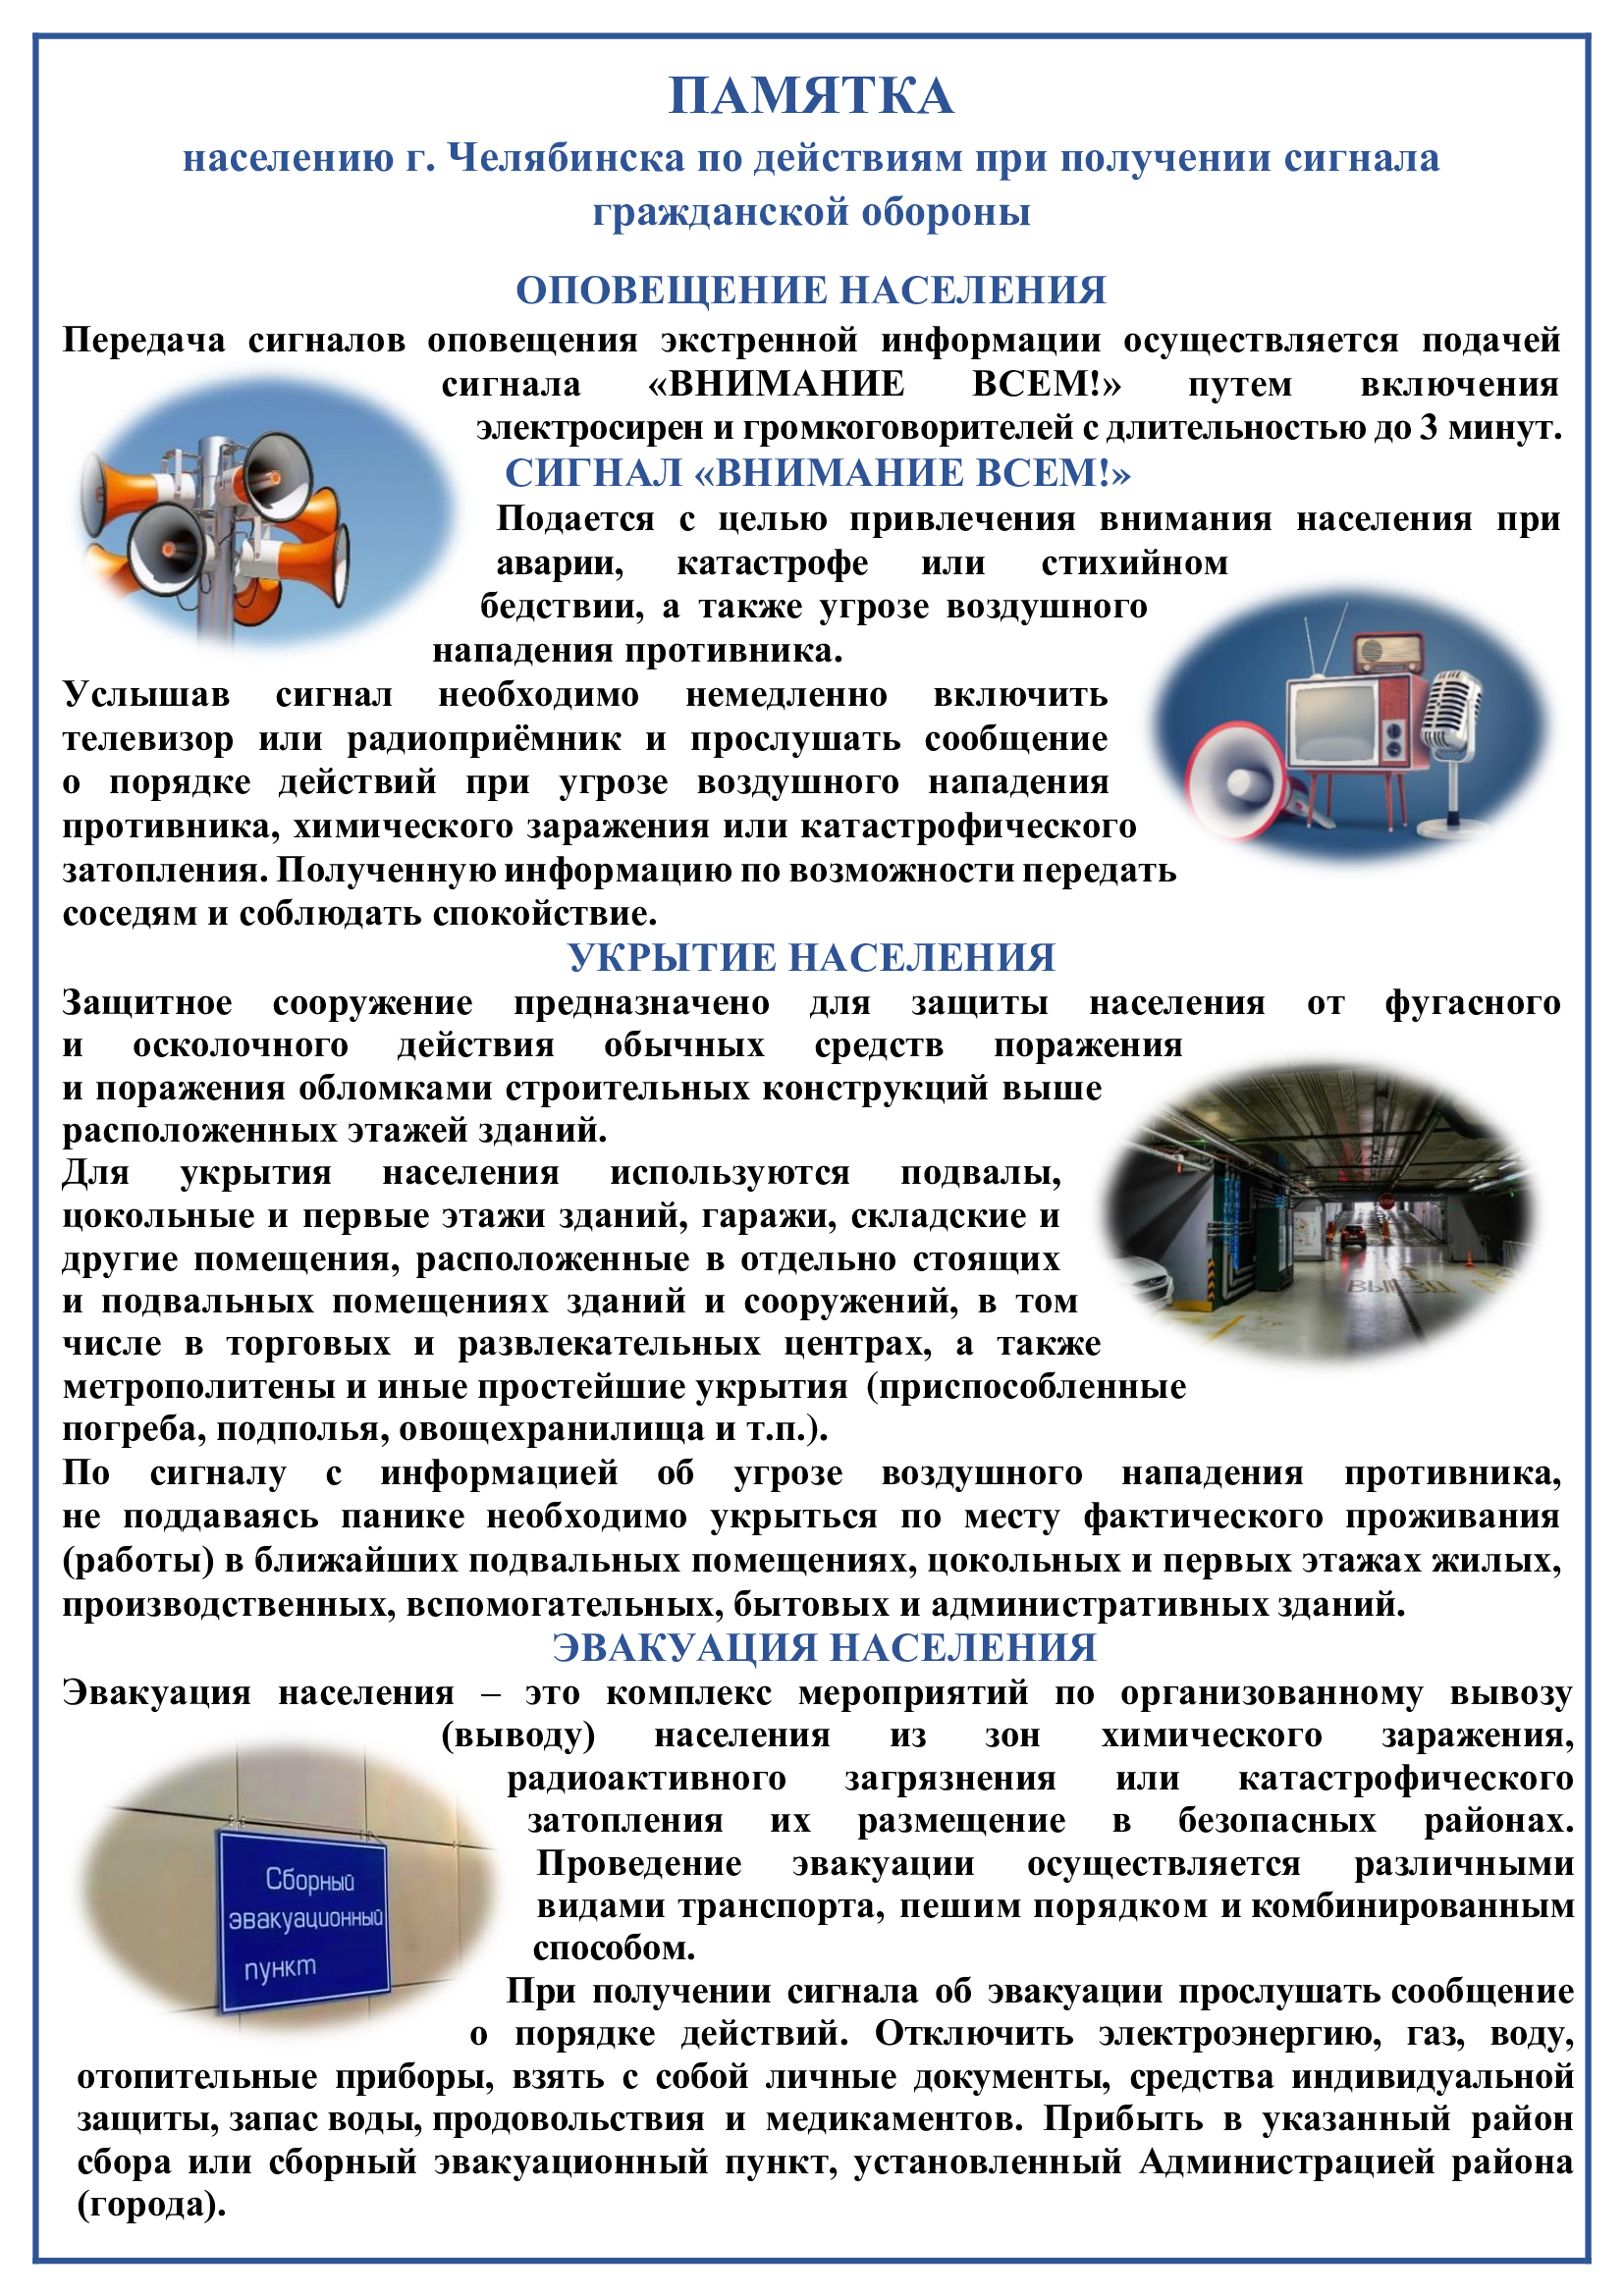 Информация в области гражданской обороны и защиты населения города Челябинска